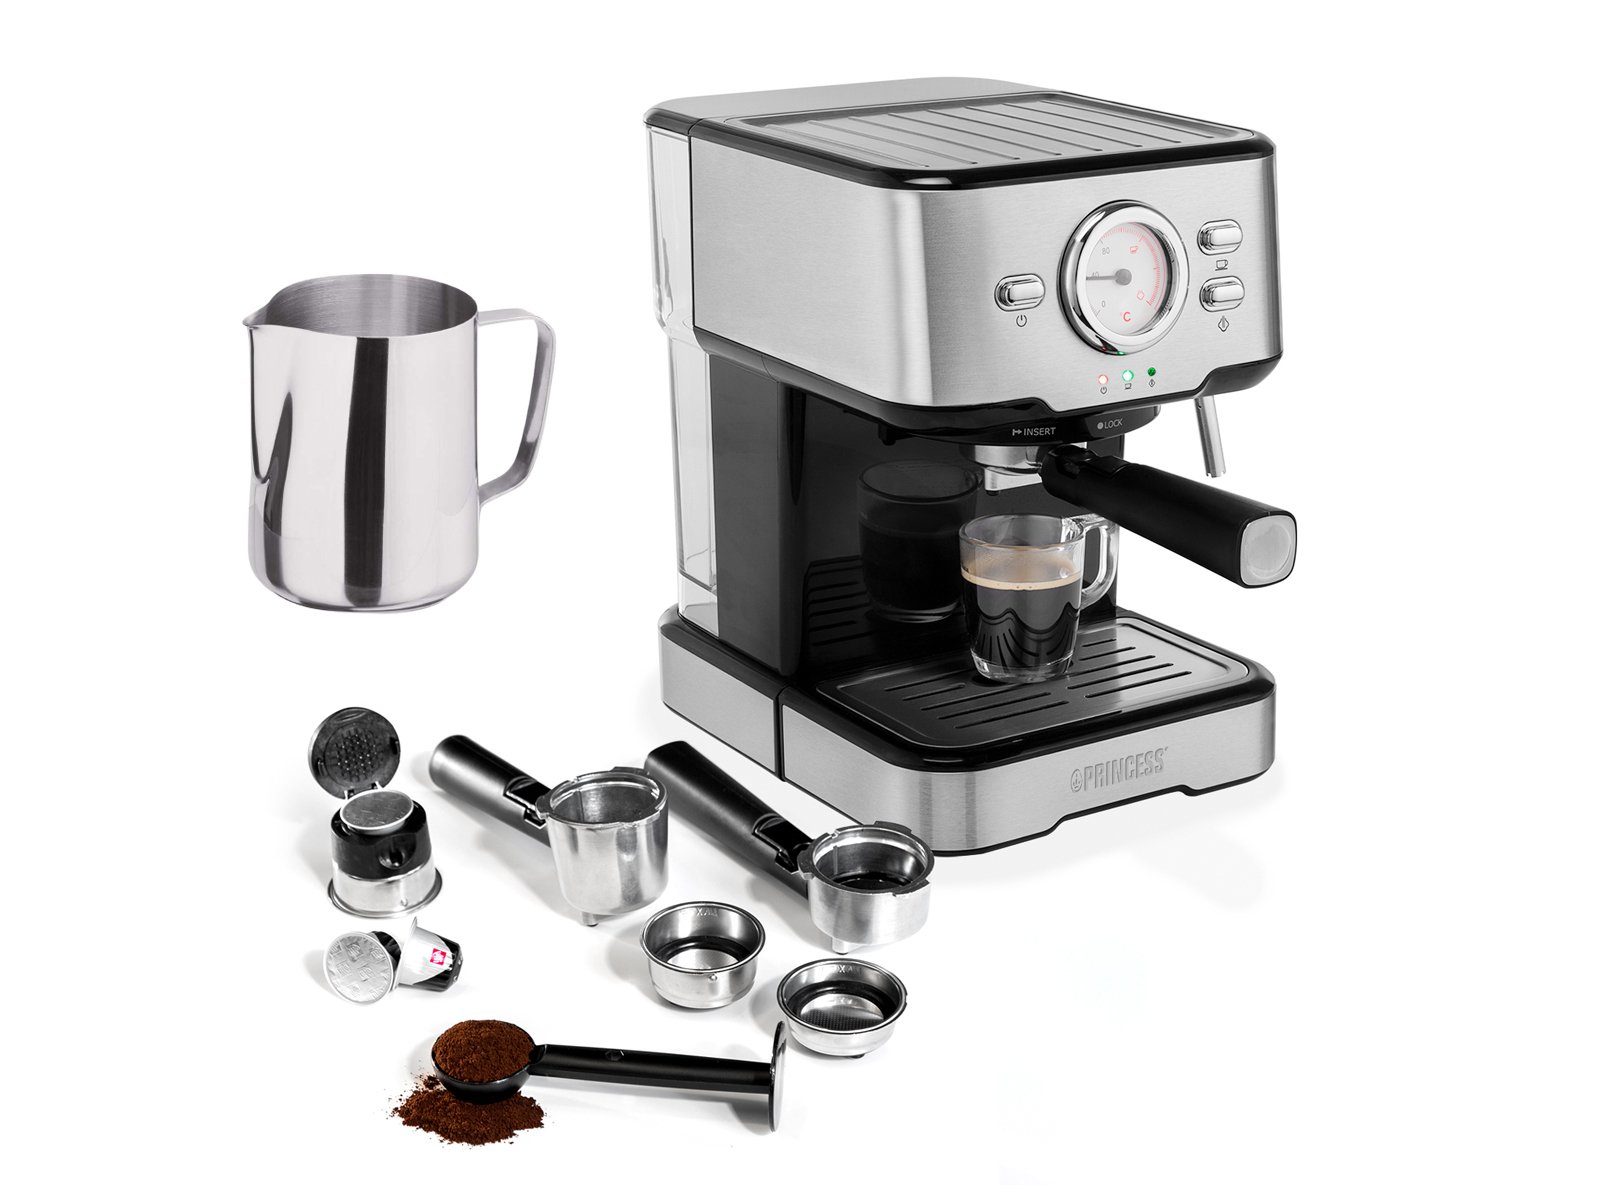 & PRINCESS Kaffee mit Milchaufschäumer Espresso-Maschine italienische Siebdruck Siebträgermaschine,